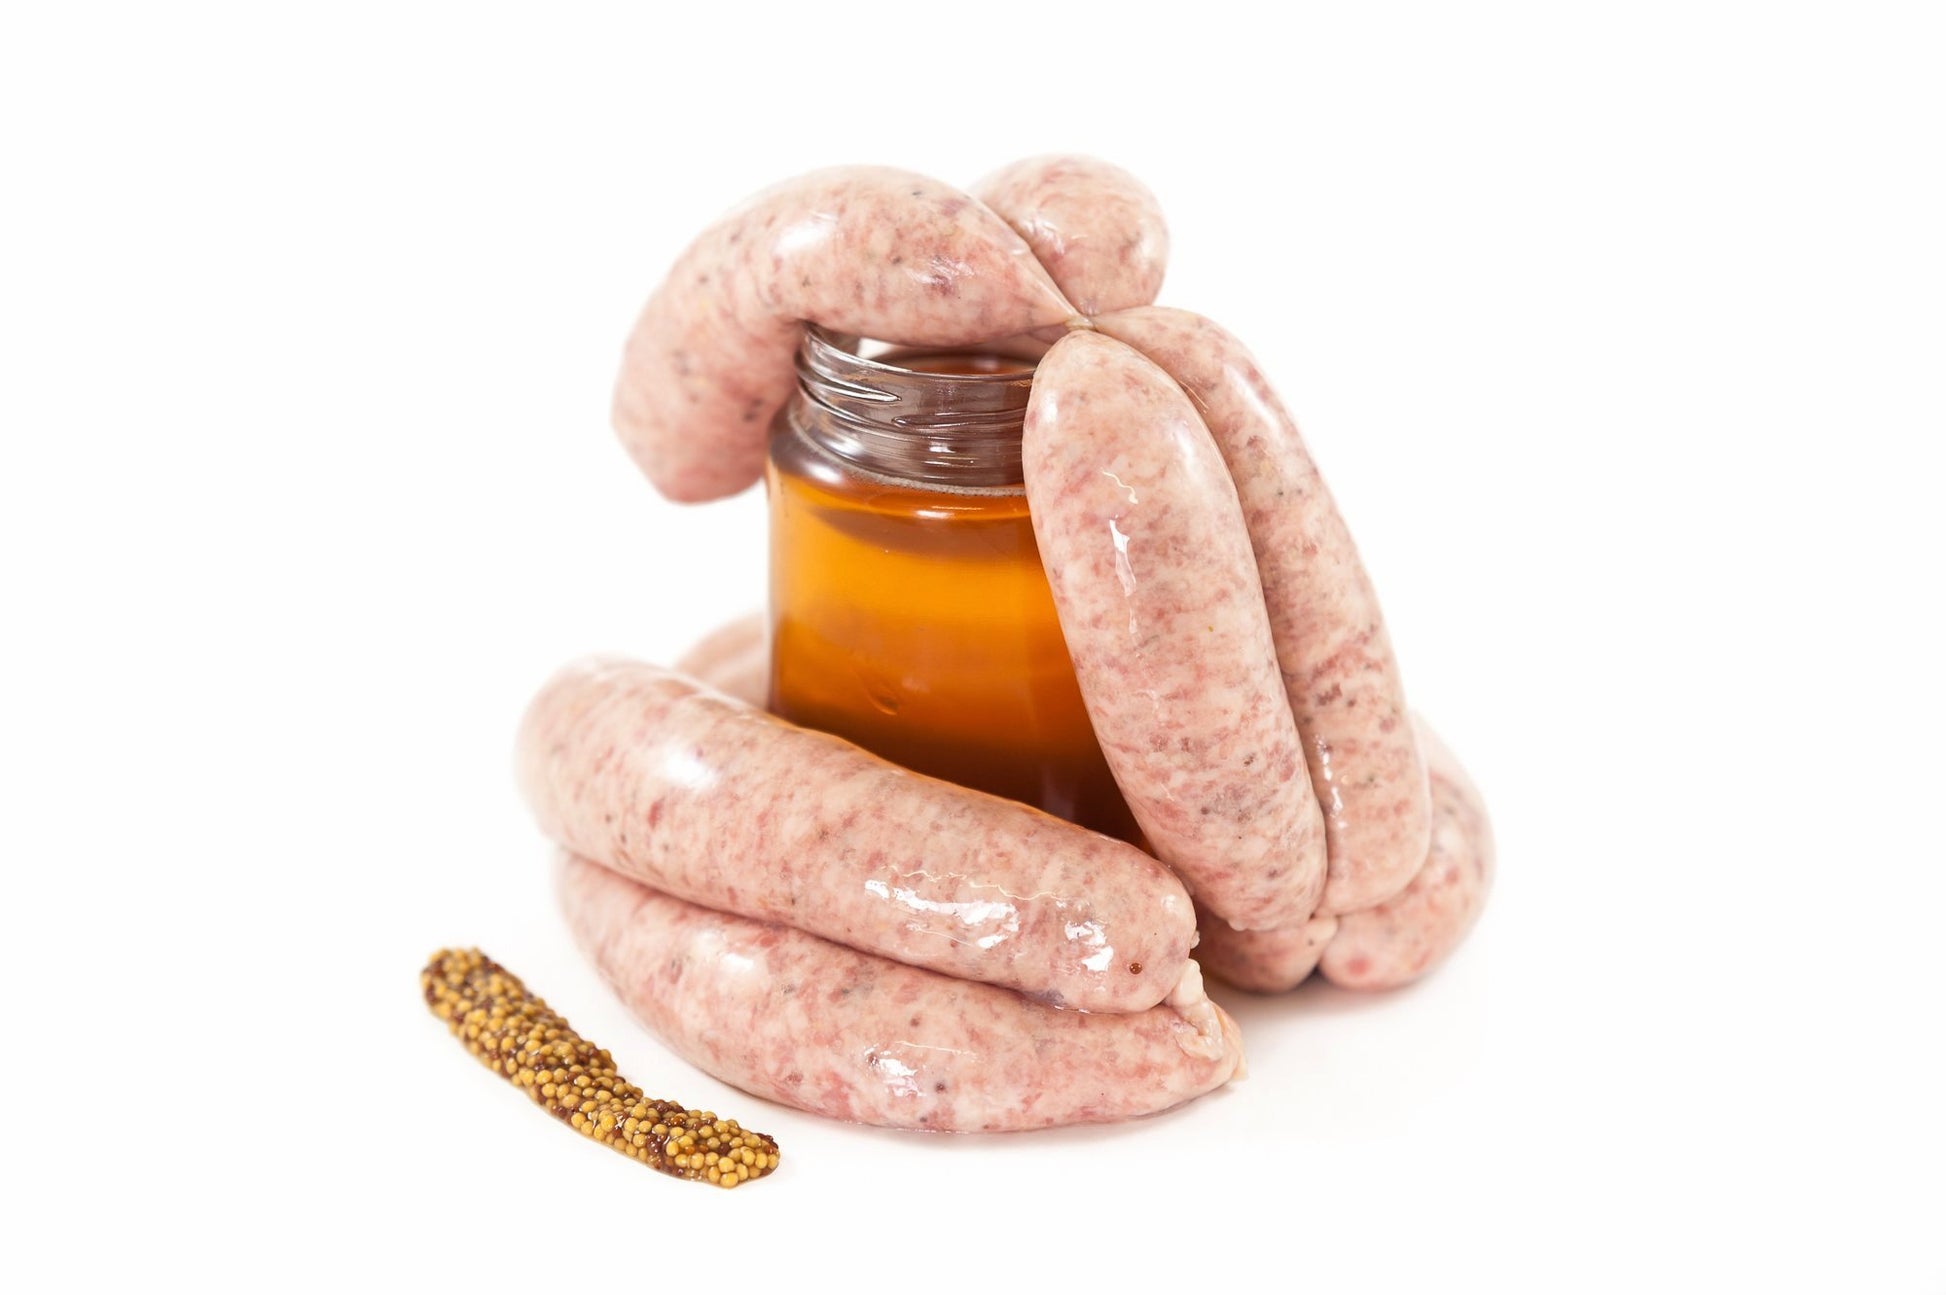 Pork Sausage with Honey & Mustard 350g pack | Online Butcher Ireland